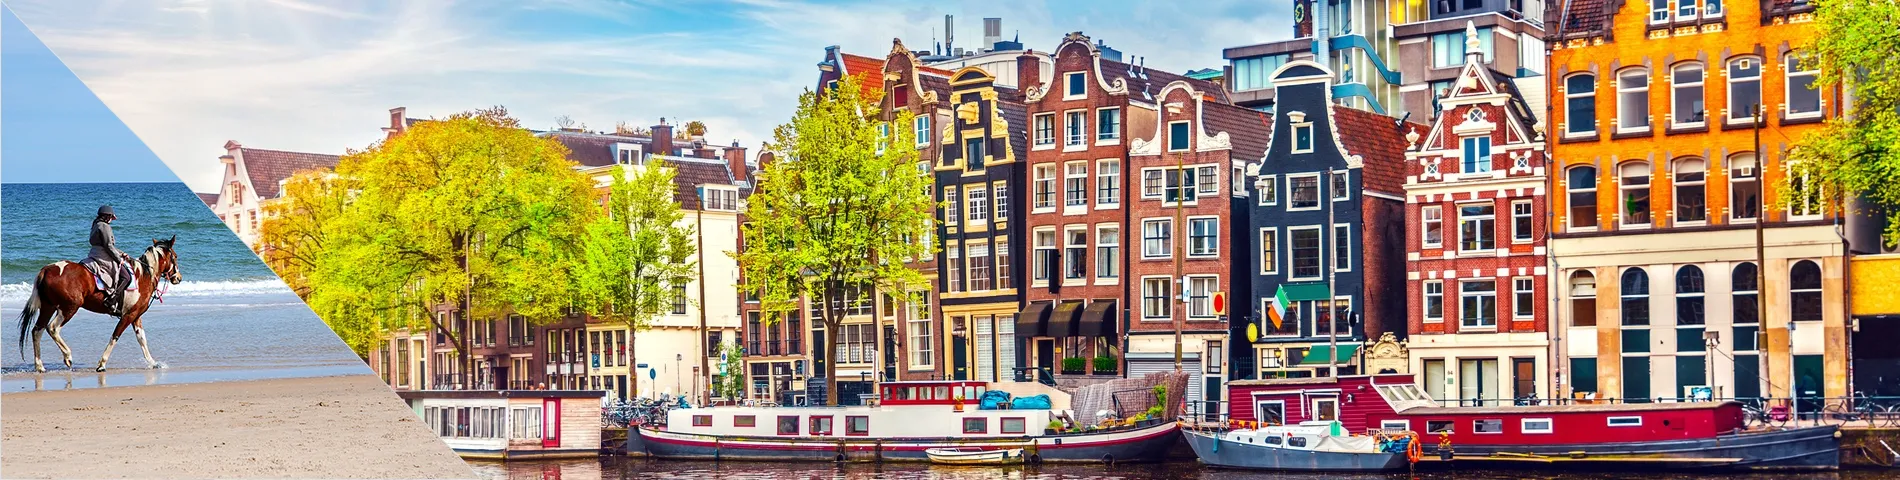 أمستردام - تعلم اللغة وركوب الخيل